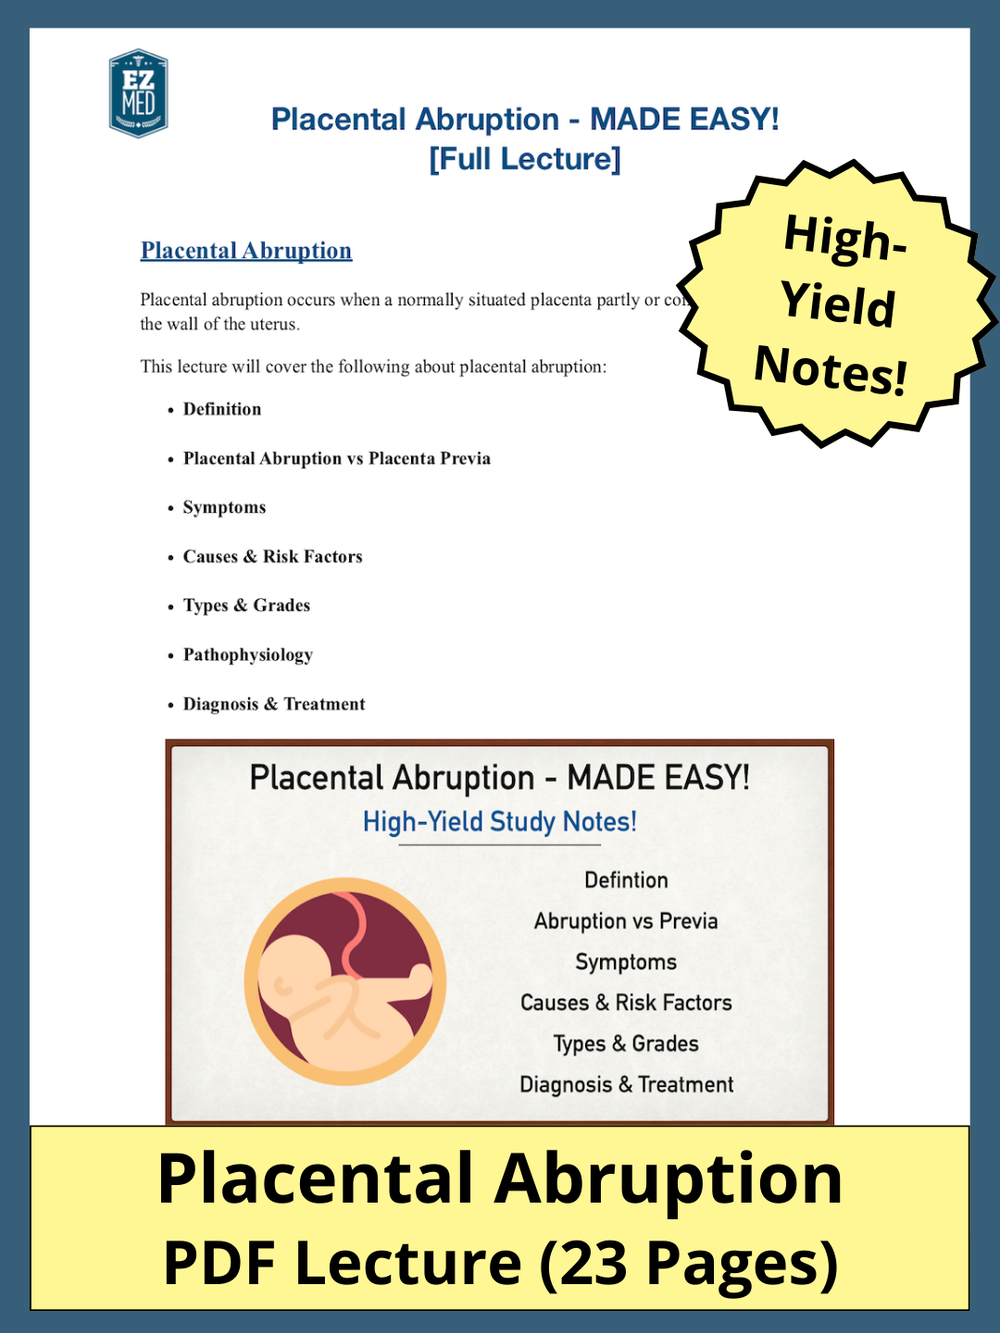 placental abruption pdf symptoms causes treatment types grades diagnosis